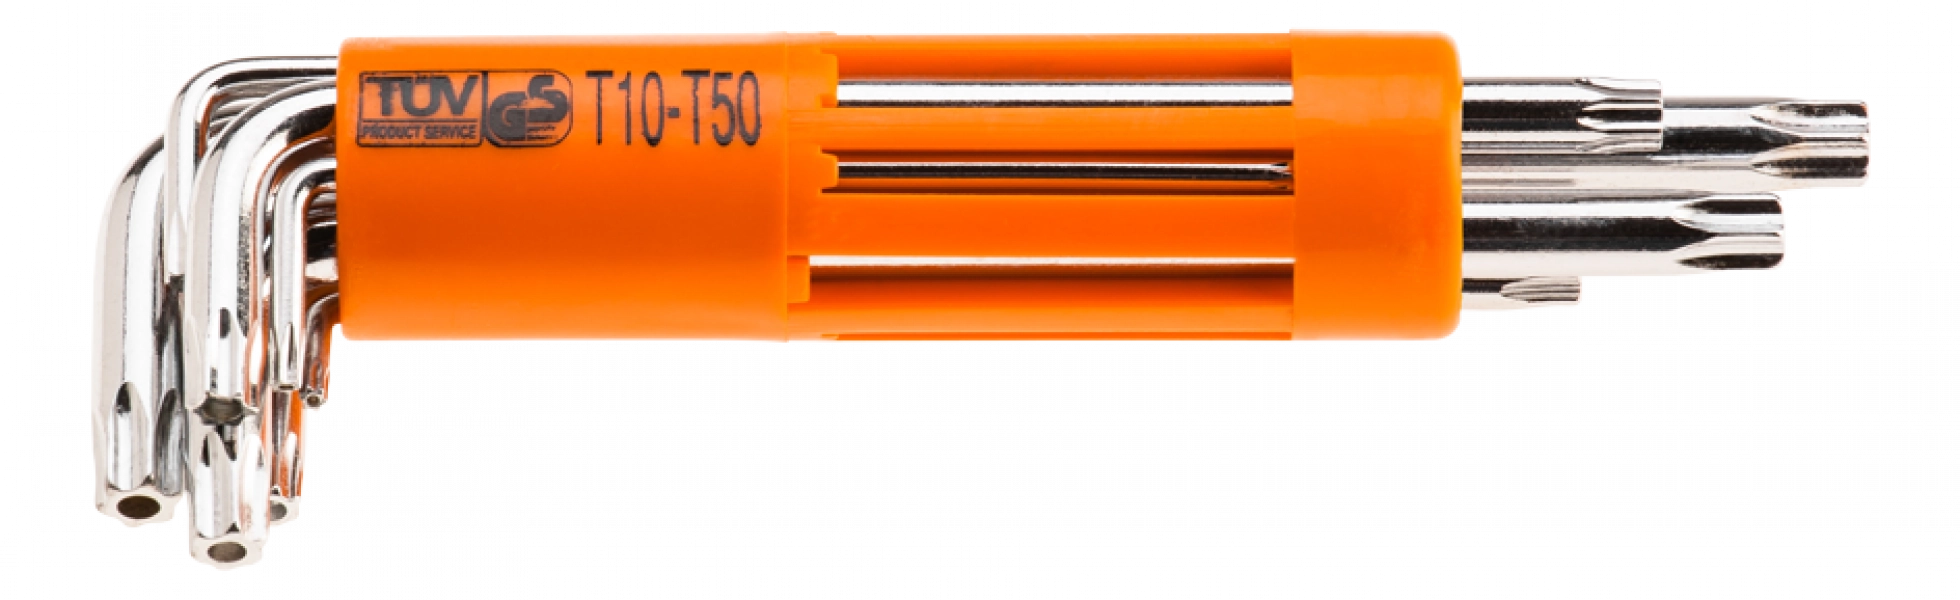 Klucze Torx długie T10-T50, zestaw 8 szt.